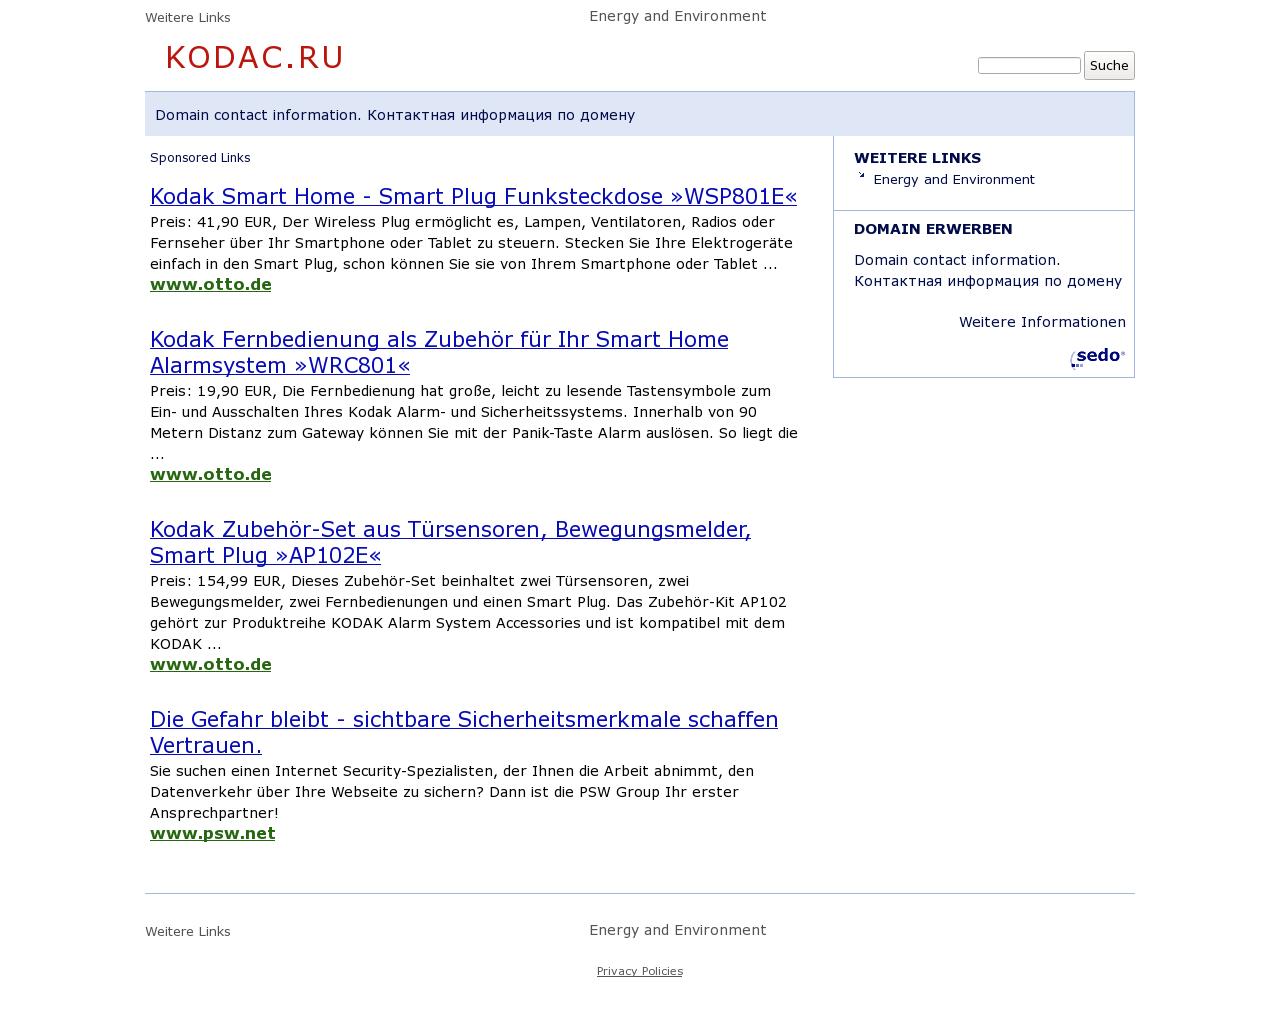 Изображение сайта kodac.ru в разрешении 1280x1024